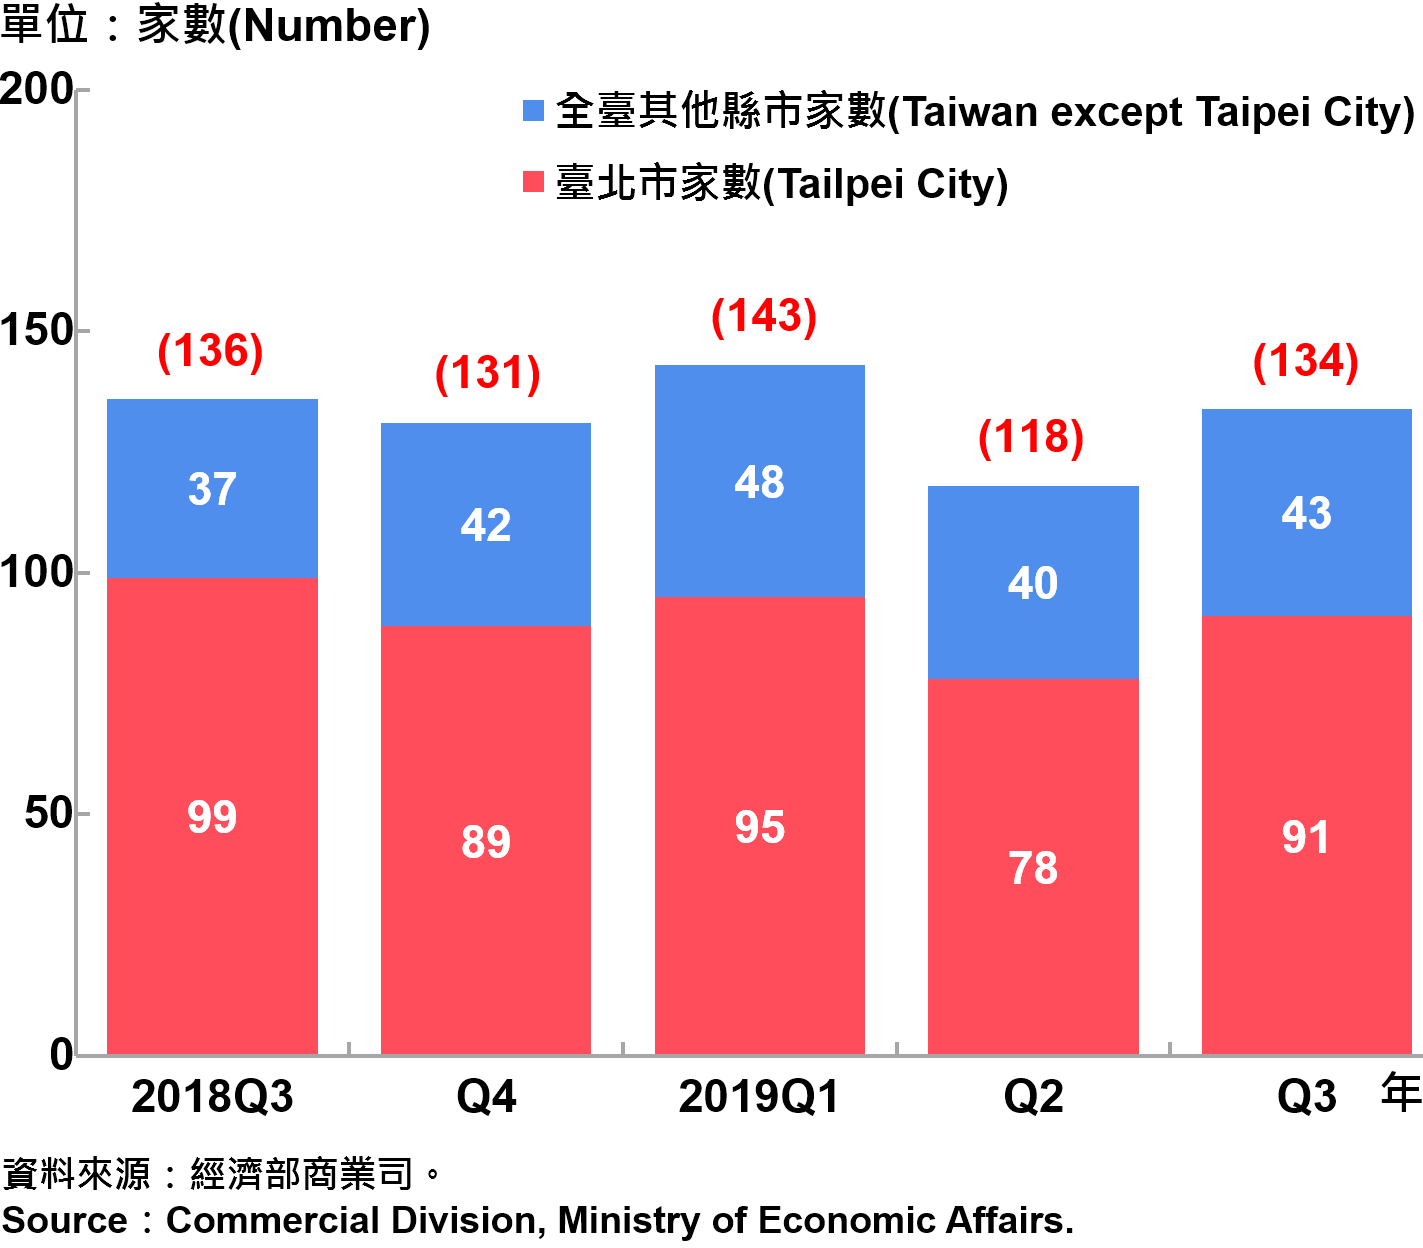 臺北市外商公司新設立家數—2019Q3 Number of Newly Established Foreign Companies in Taipei City—2019Q3